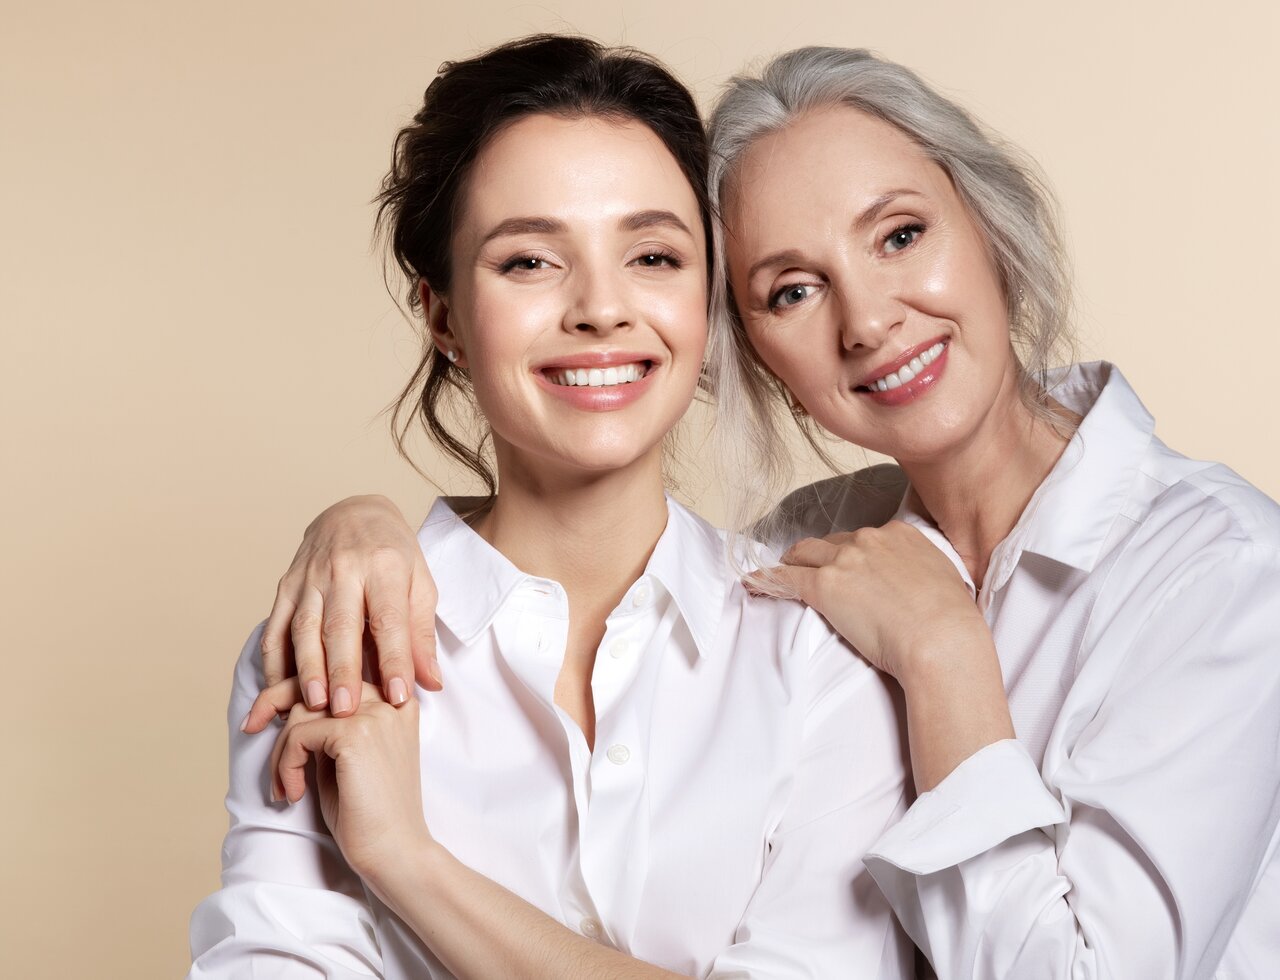 Schöne Frau um die 60 Jahre mit gepflegter Haut steht neben einer jüngeren Frau als Sinnbild für die richtige Gesichtspflege für jedes Alter bei reifer Haut